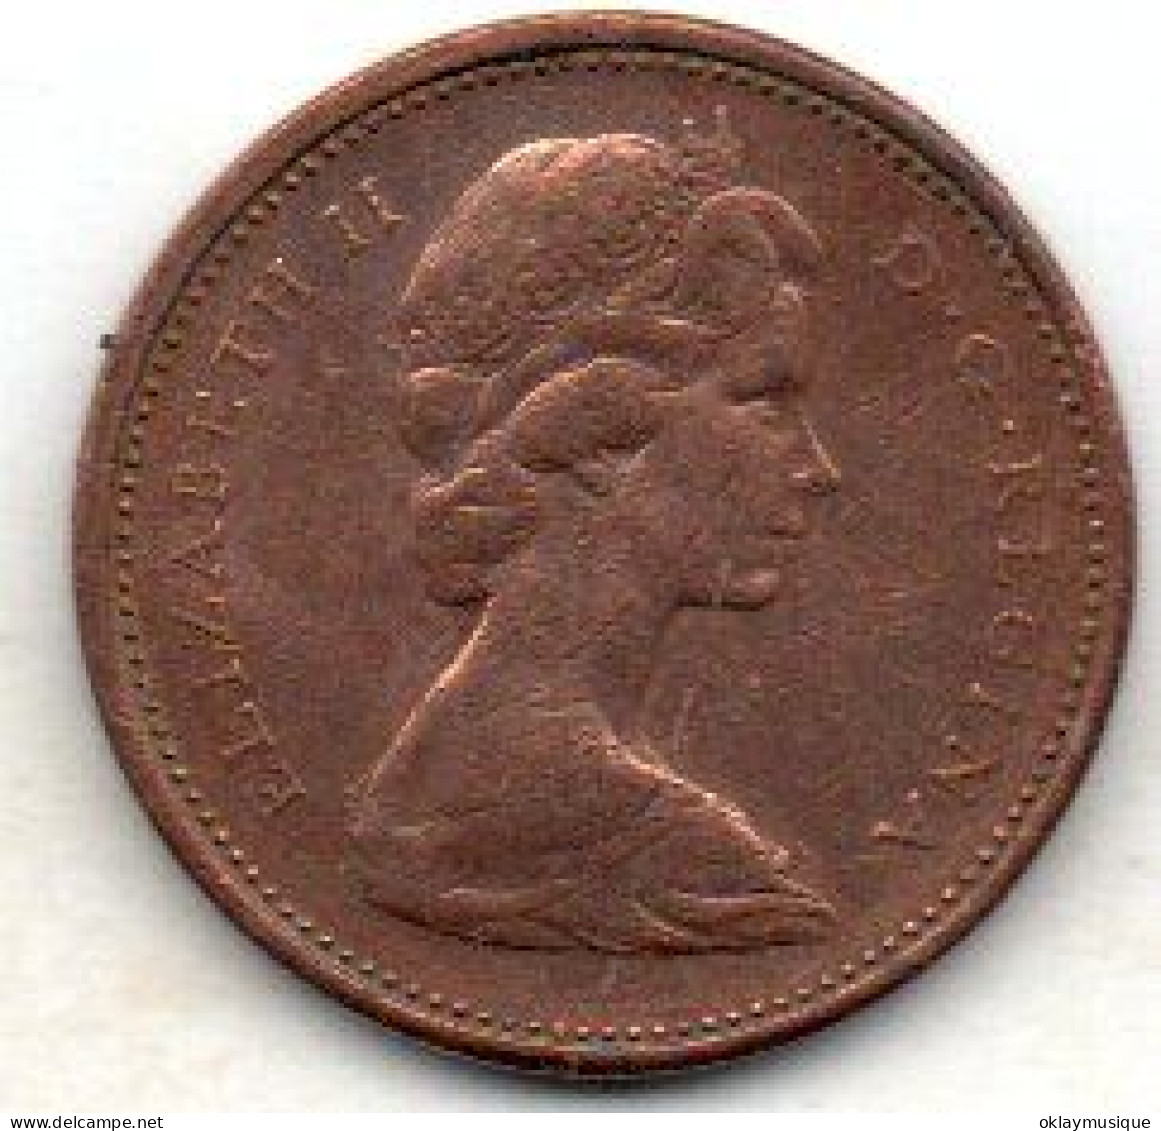 Canada 1 Cent 1982 - Canada